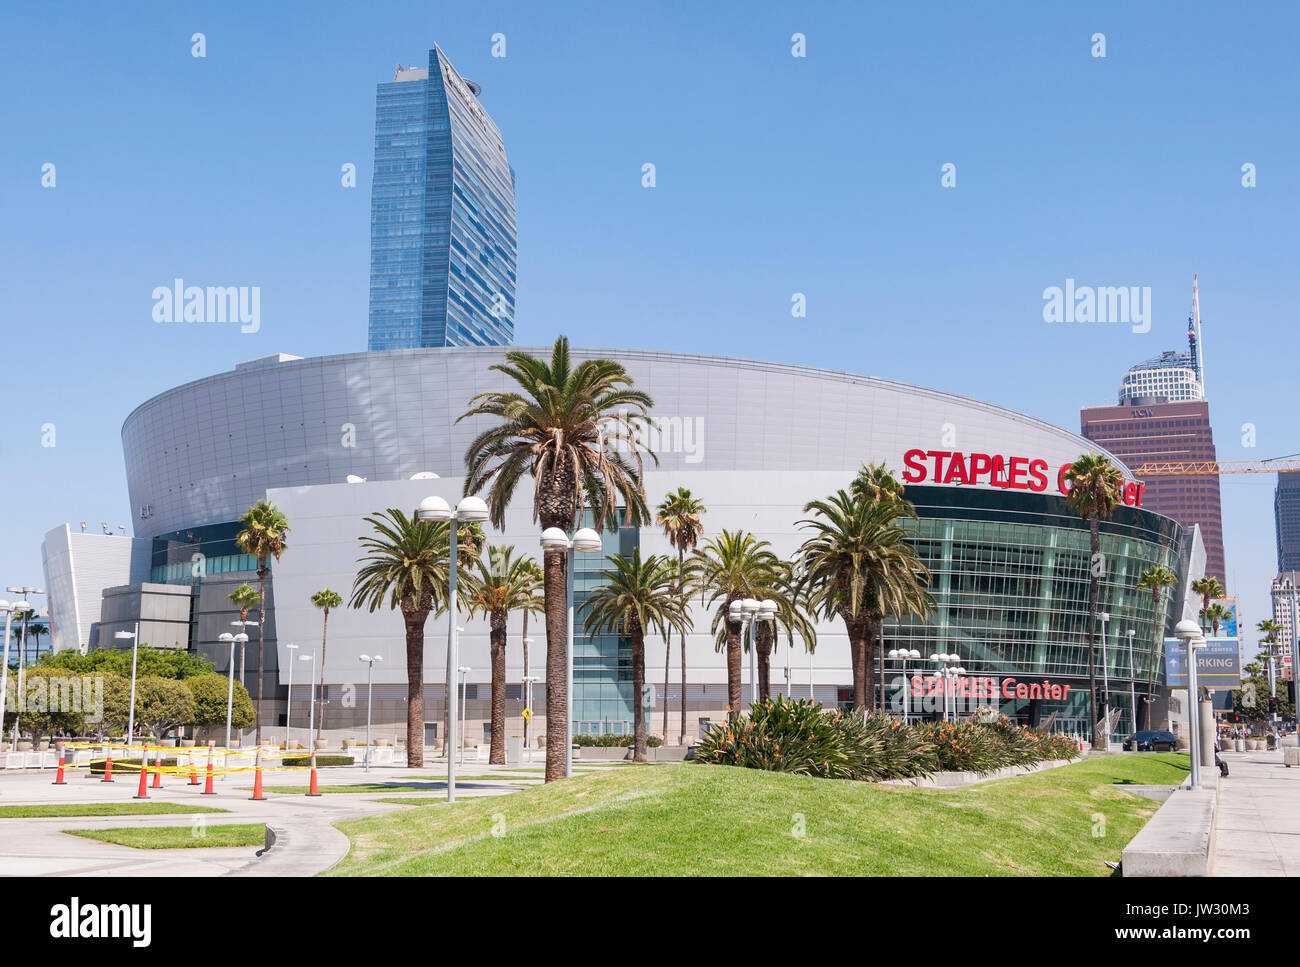 03 settembre 2016. Los Angeles - Stati Uniti d'America. Famoso Staples Center è un multi-purpose arena sportiva nel centro cittadino di Los Angeles. Foto Stock